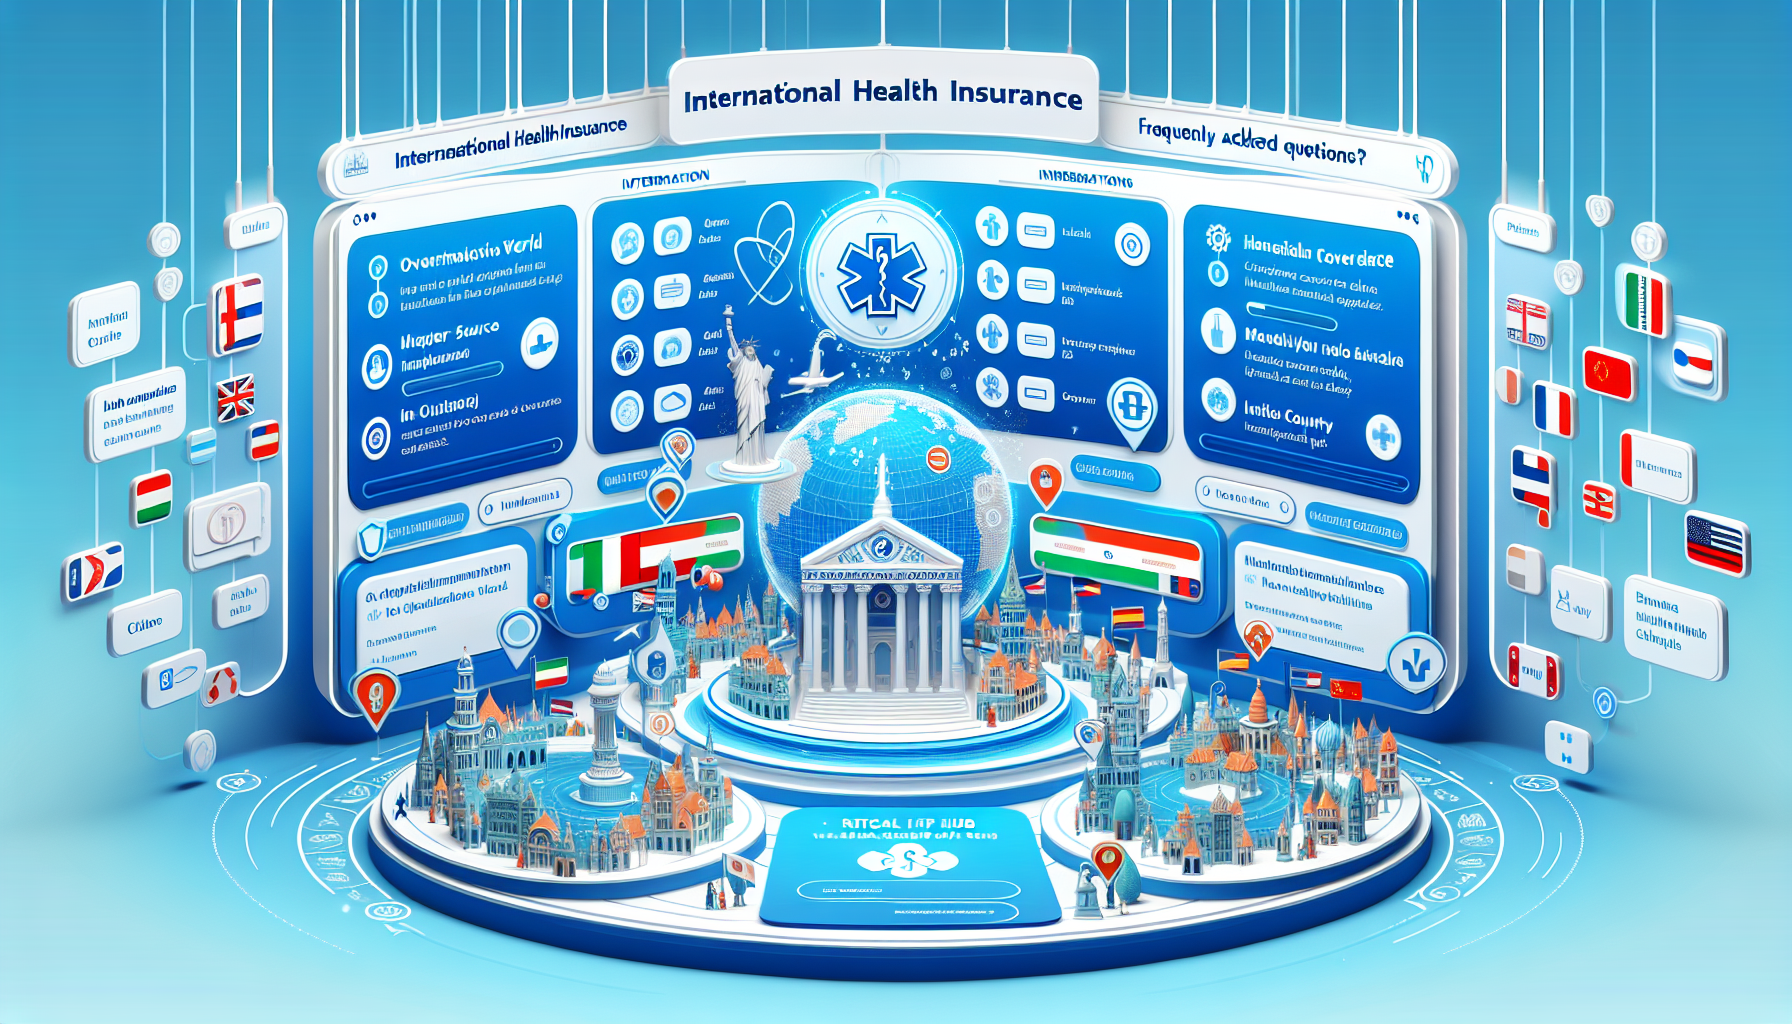 découvrez dans cette faq des réponses spécifiques sur les pays concernant l'assurance santé internationale.